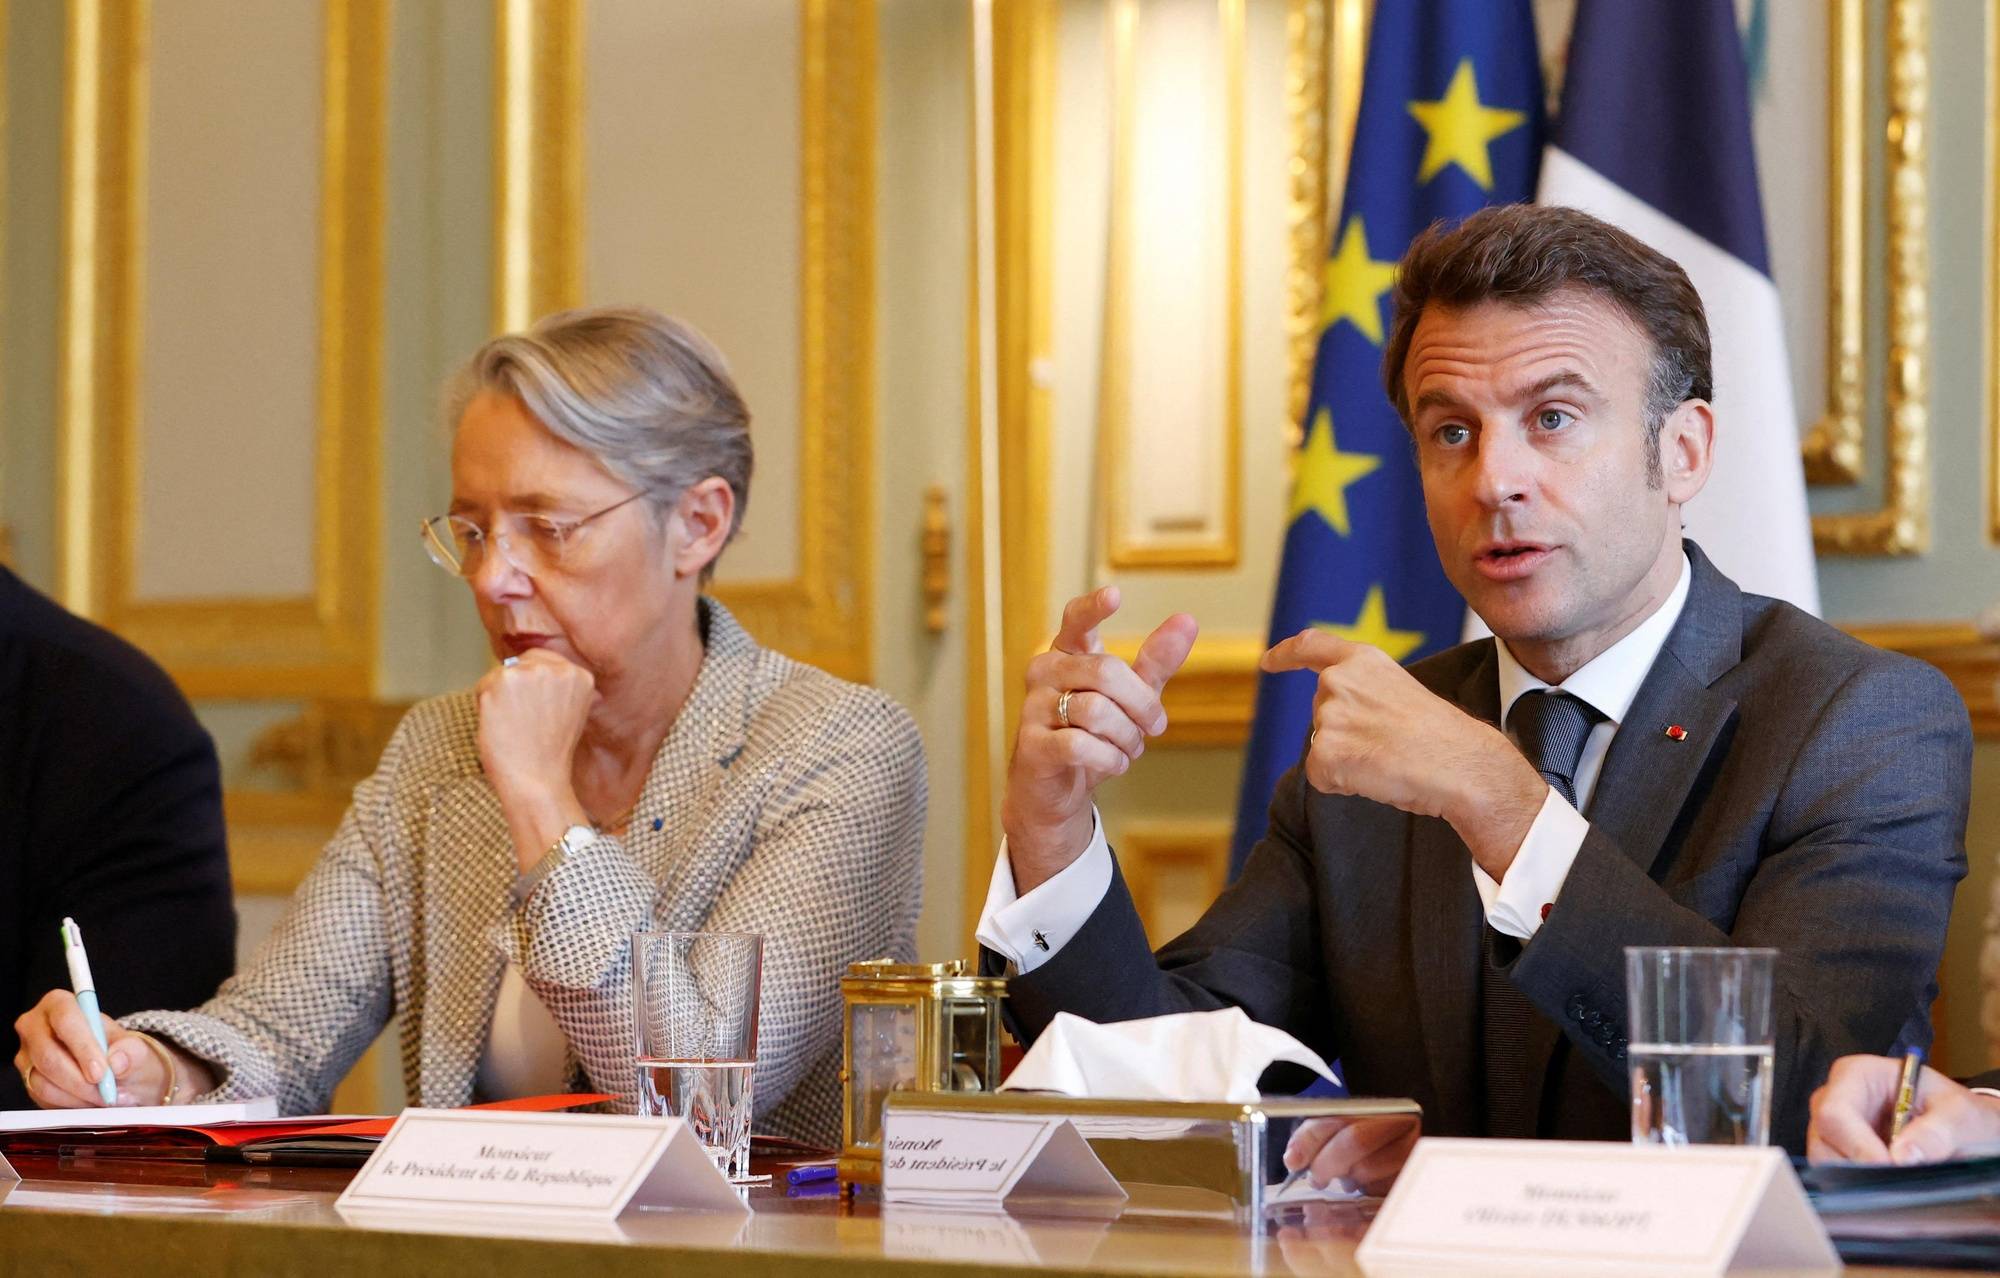 De nouvelles réformes lancées par l'exécutif, un Président en déplacement... Emmanuel Macron accélère